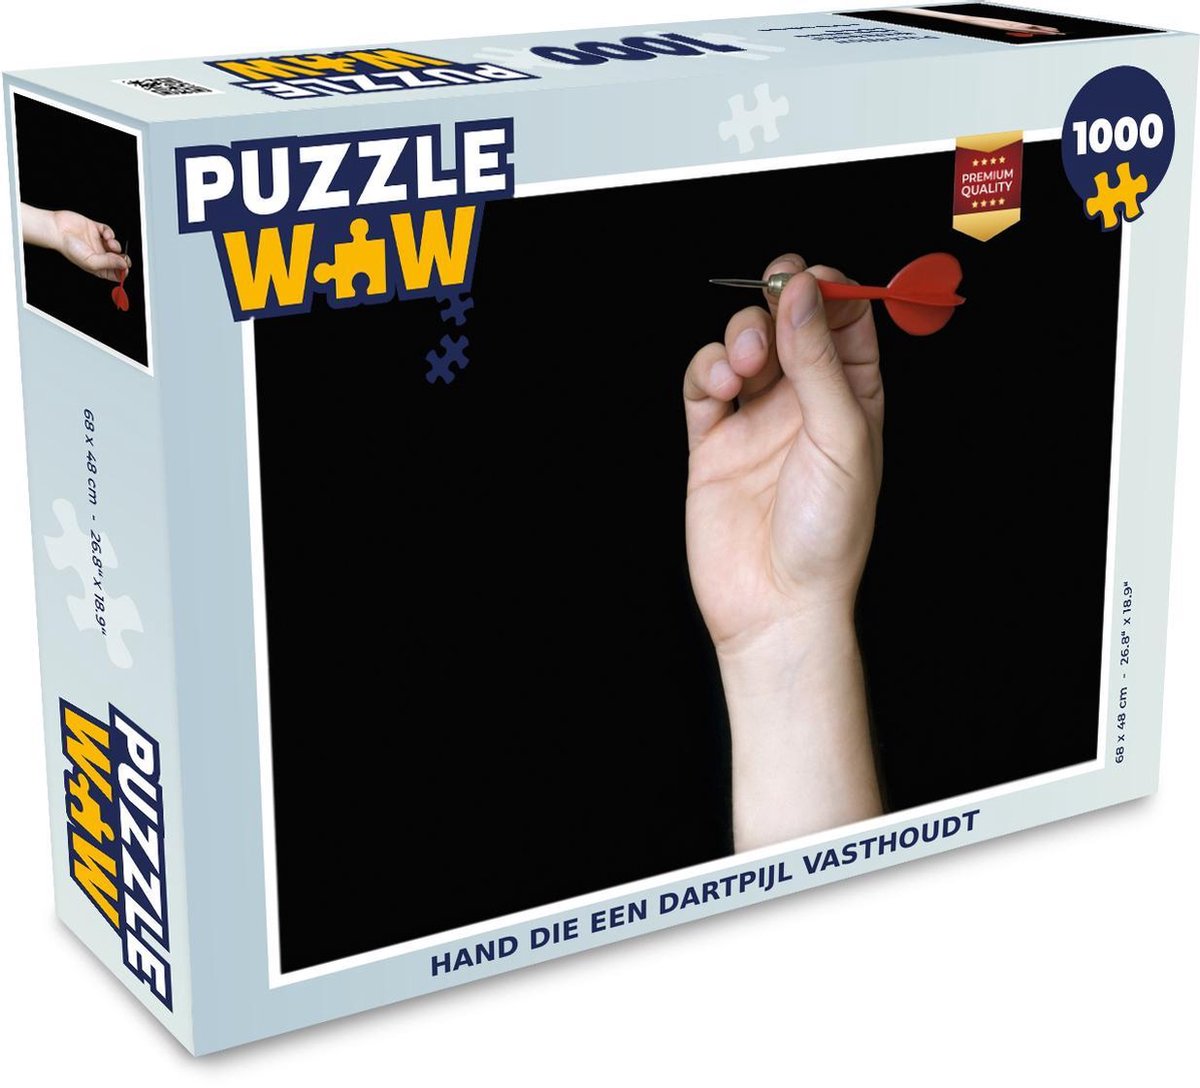 Puzzel 1000 stukjes volwassenen Darten 1000 stukjes - Hand die een dartpijl vasthoudt - PuzzleWow heeft +100000 puzzels